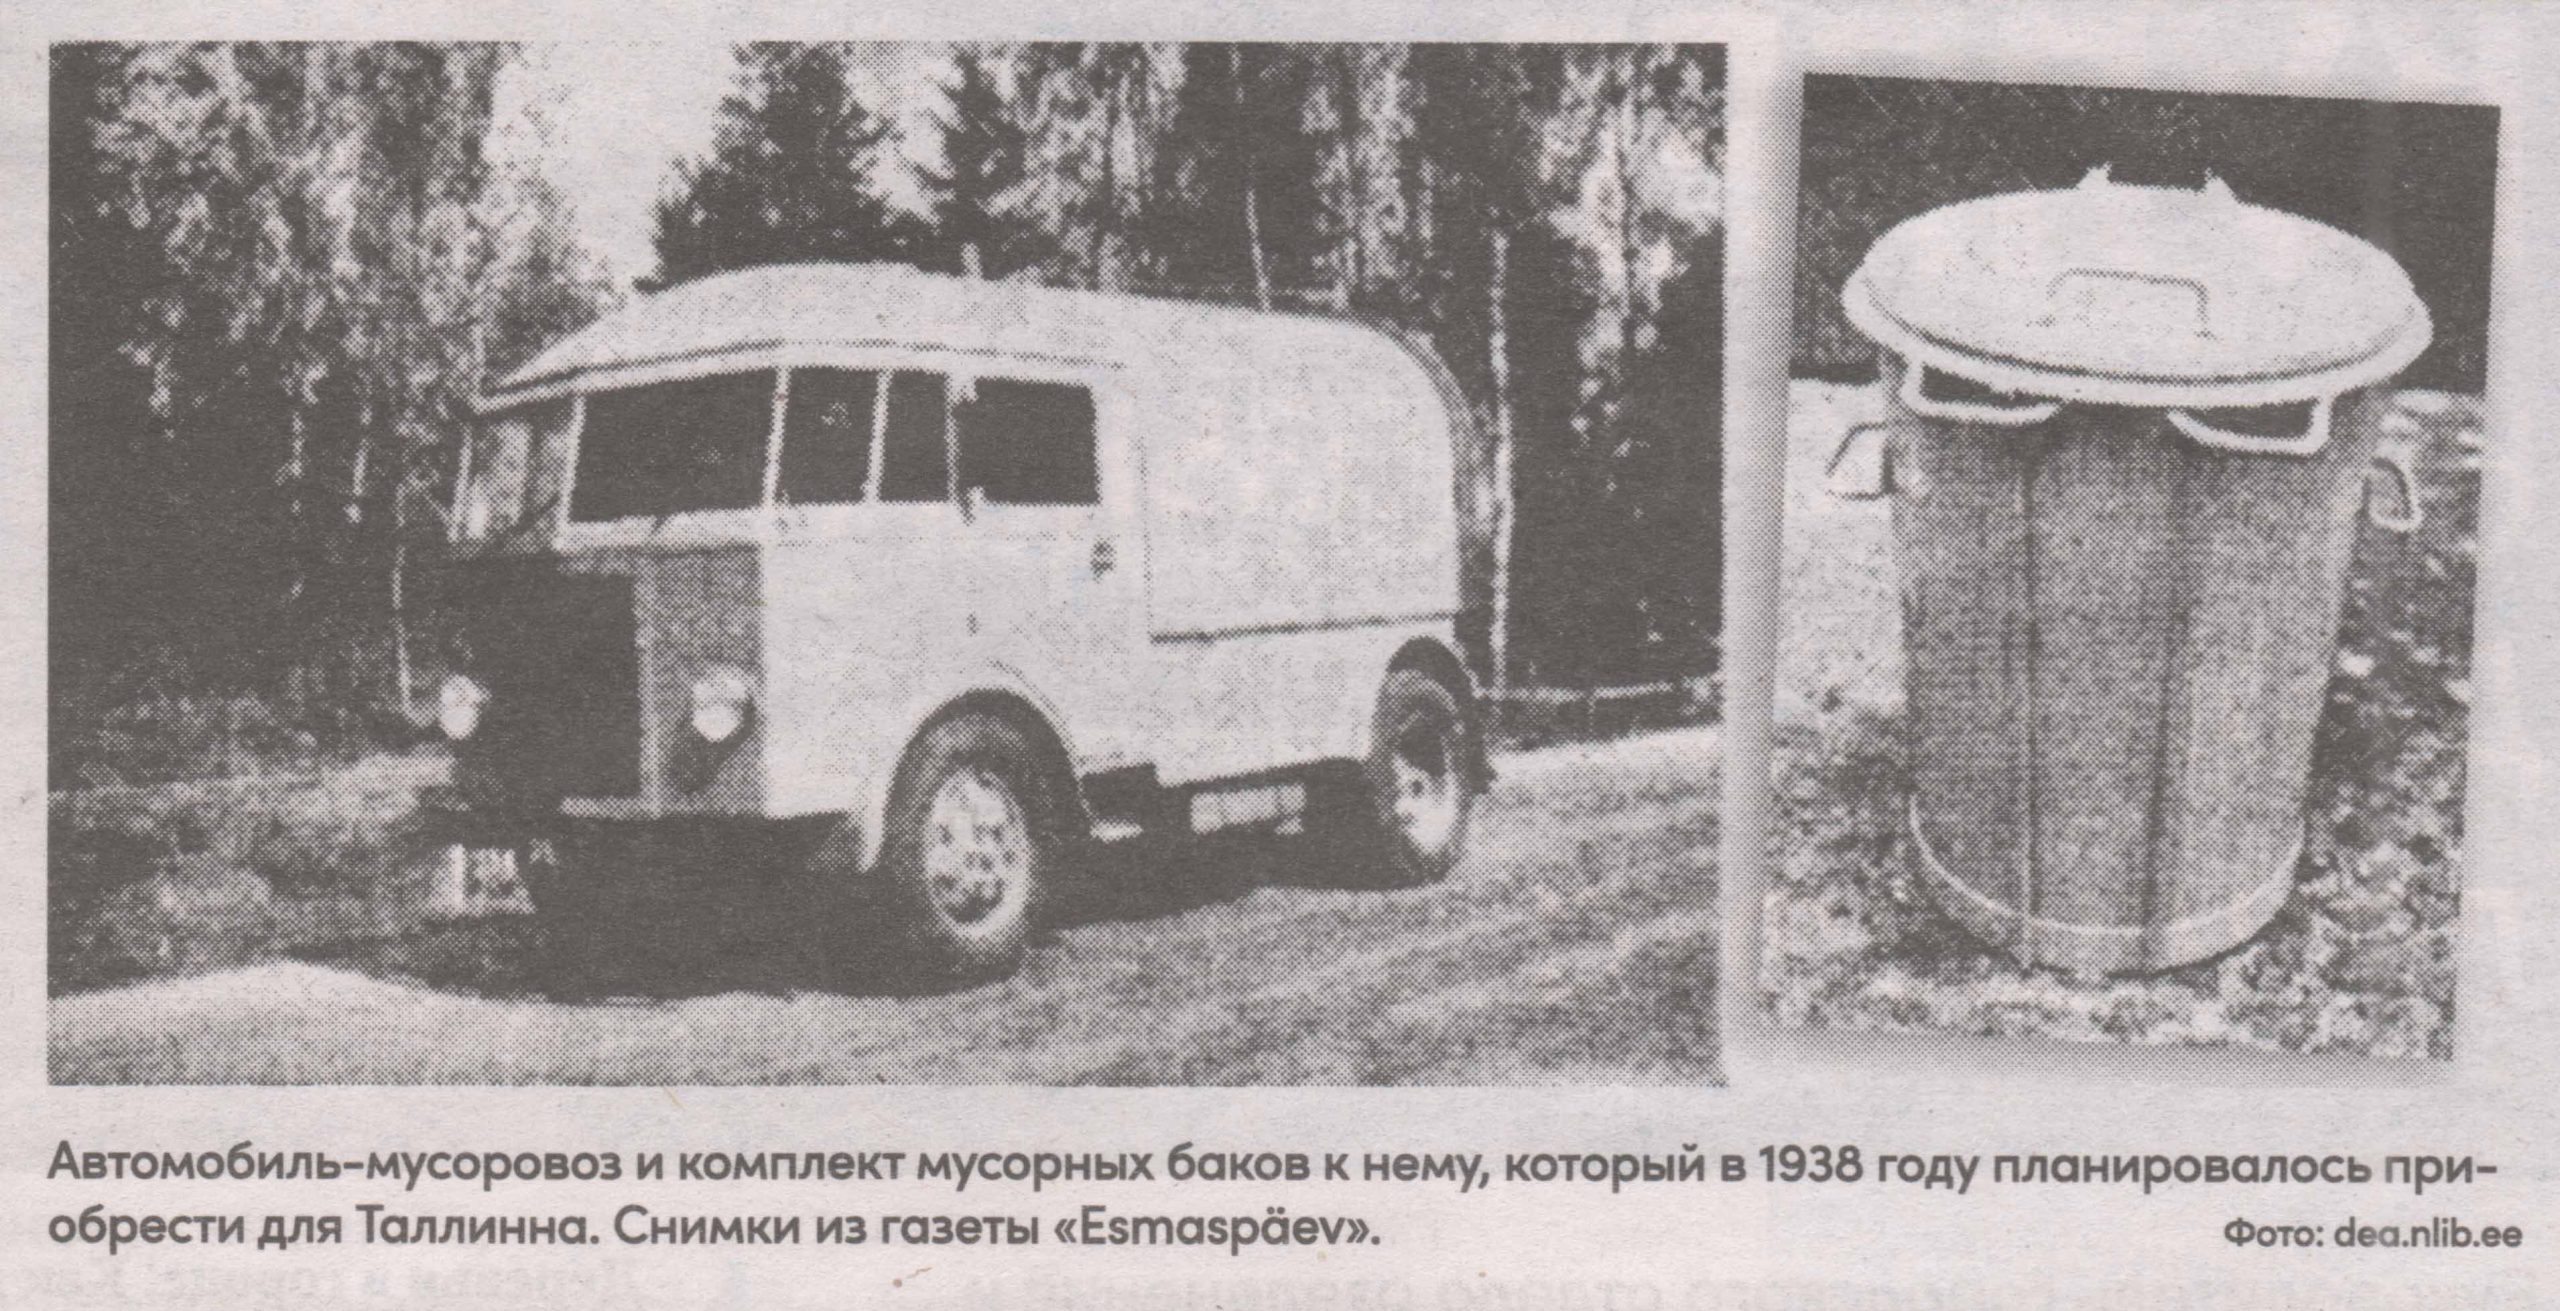 Автомобиль-мусоровоз и комплект мусорных баков к нему, который в 1938 году планировалось приобрести для Таллинна. Снимки из газеты «Esmaspäev».